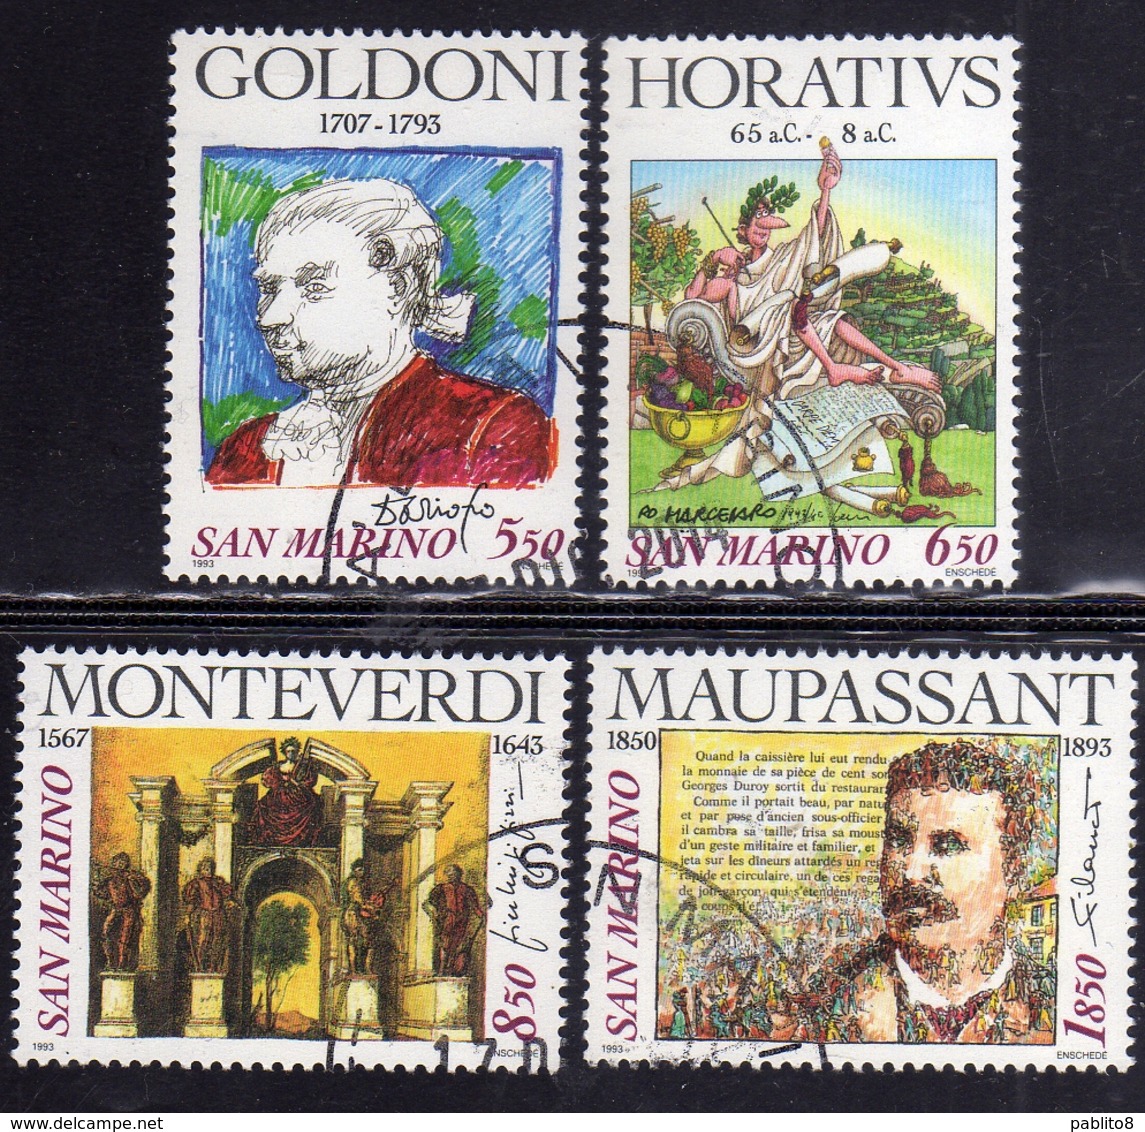 REPUBBLICA DI SAN MARINO 1993 CELEBRAZIONI D'AUTORE AUTHOR CELEBRATIONS SERIE COMPLETA COMPLETE SET USATA USED OBLITERE' - Used Stamps